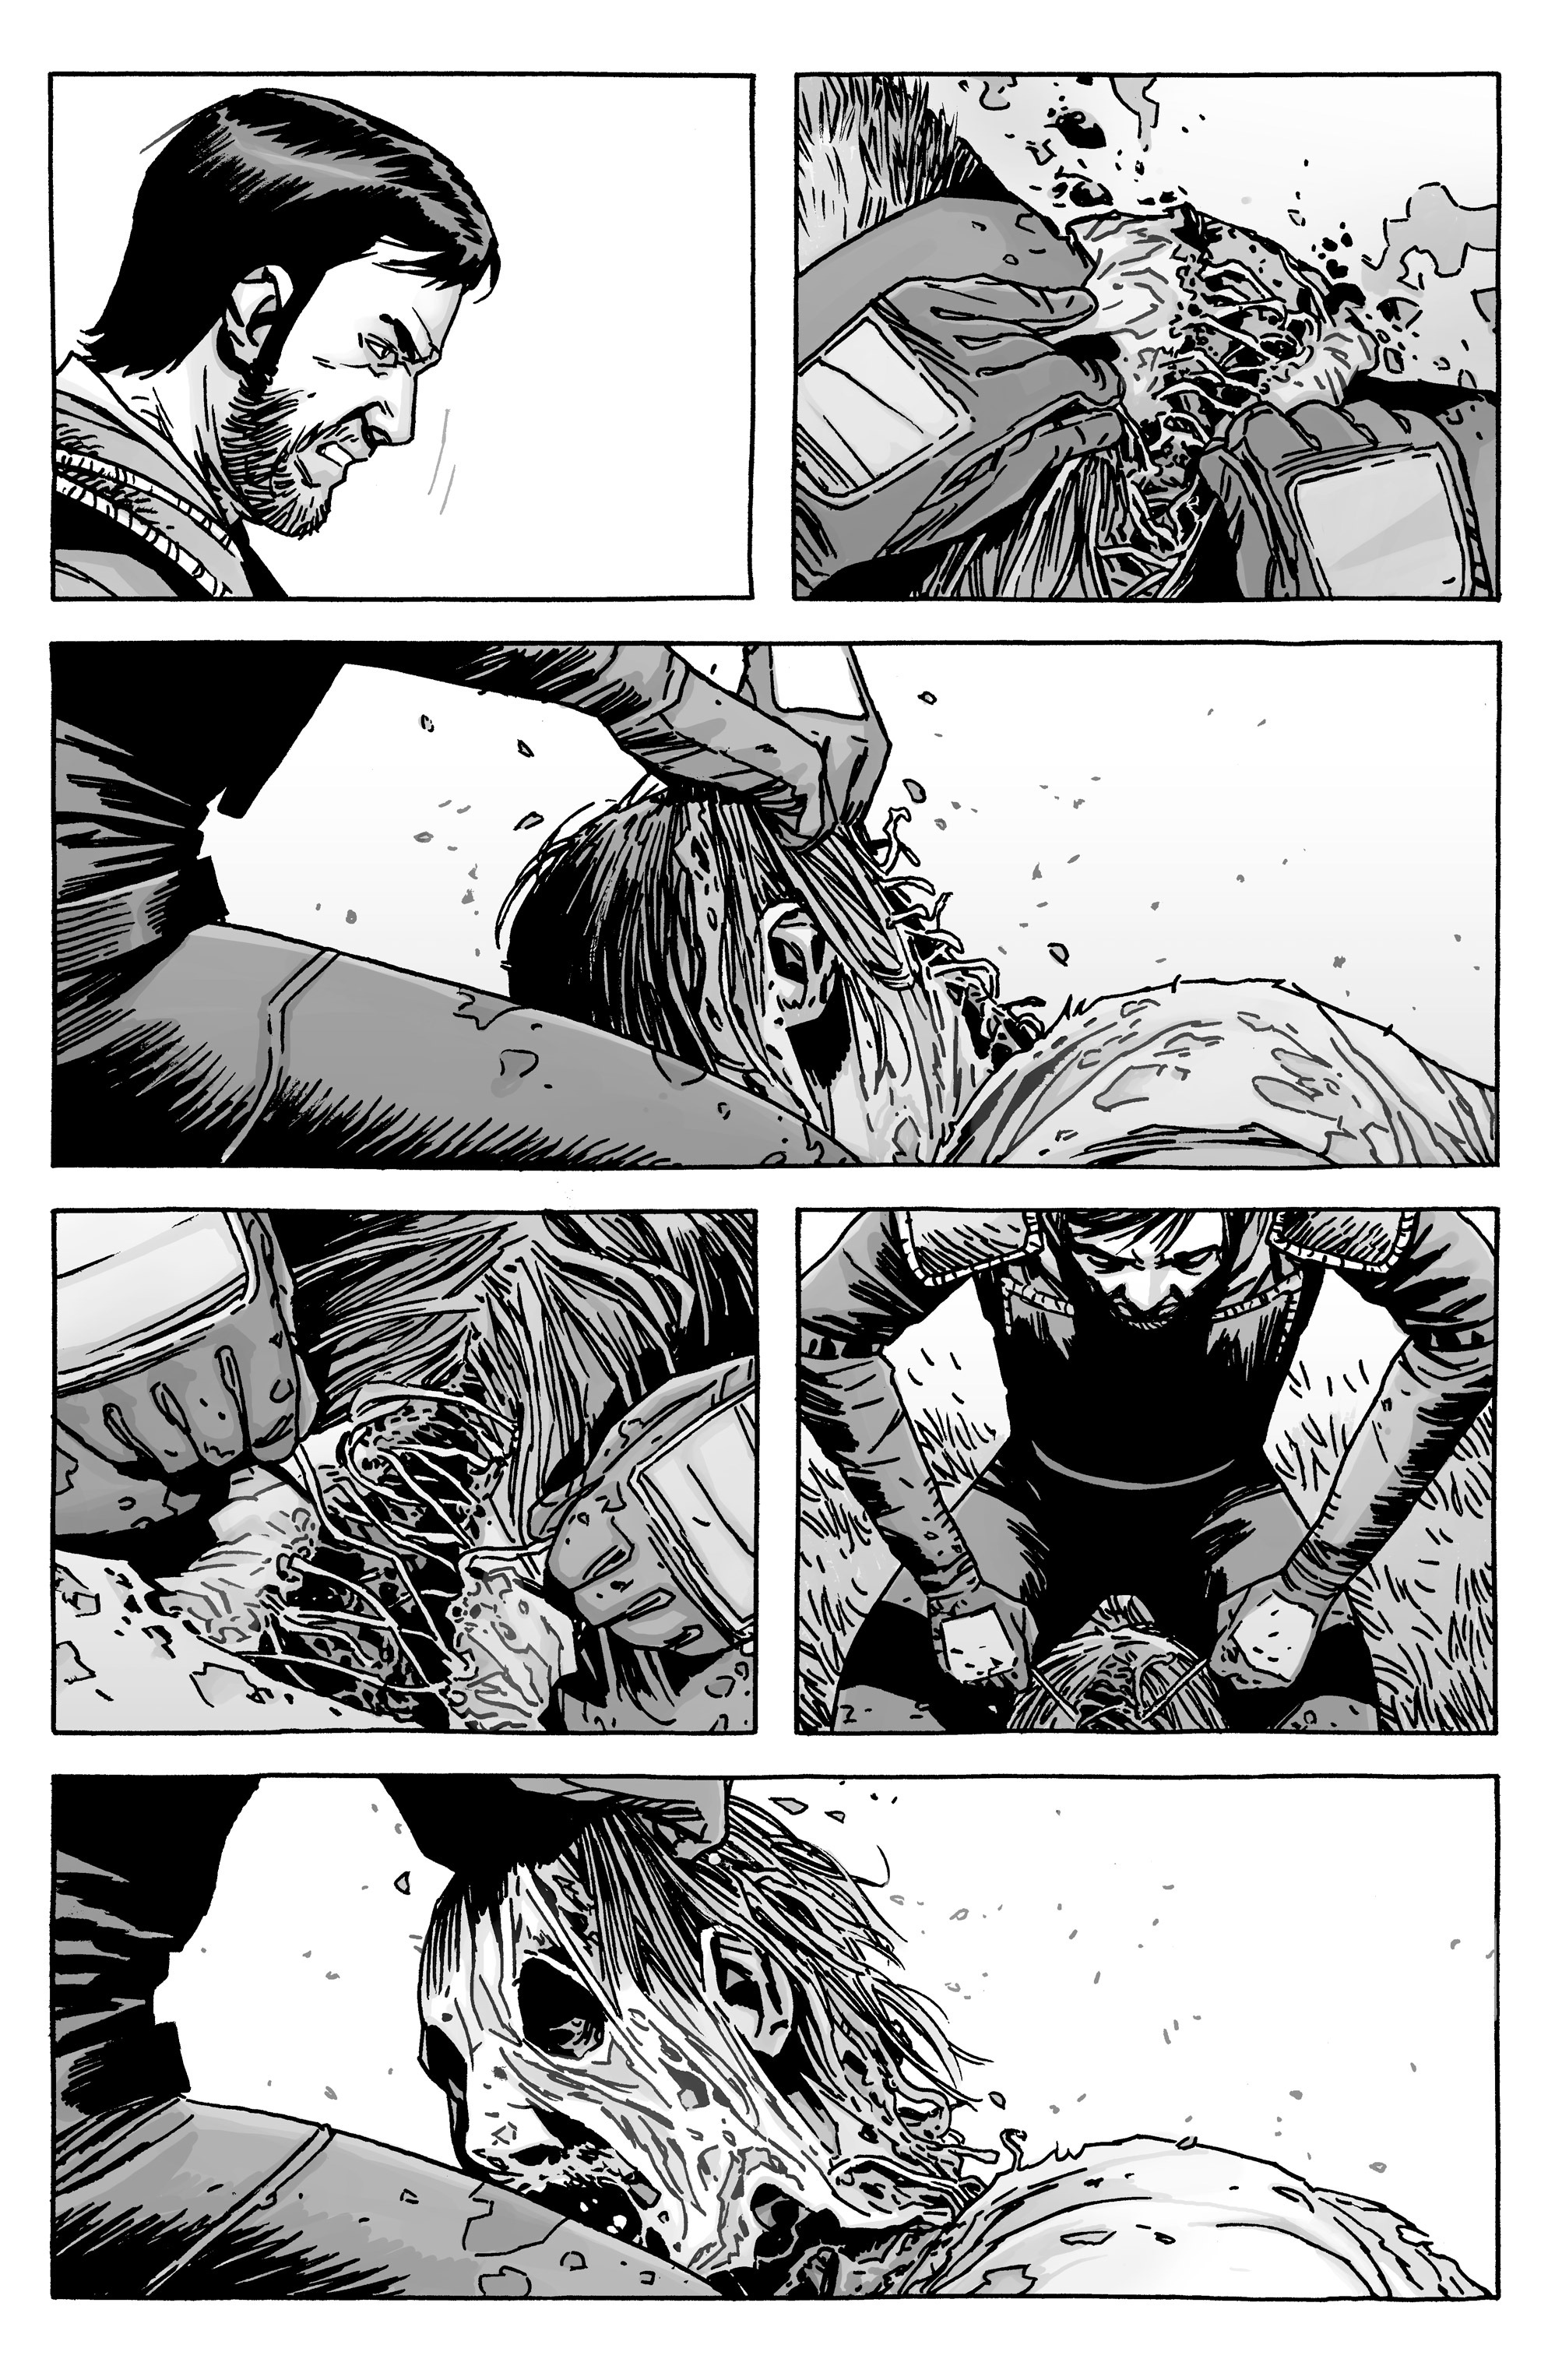 Read online The Walking Dead comic -  Issue #132 - 19